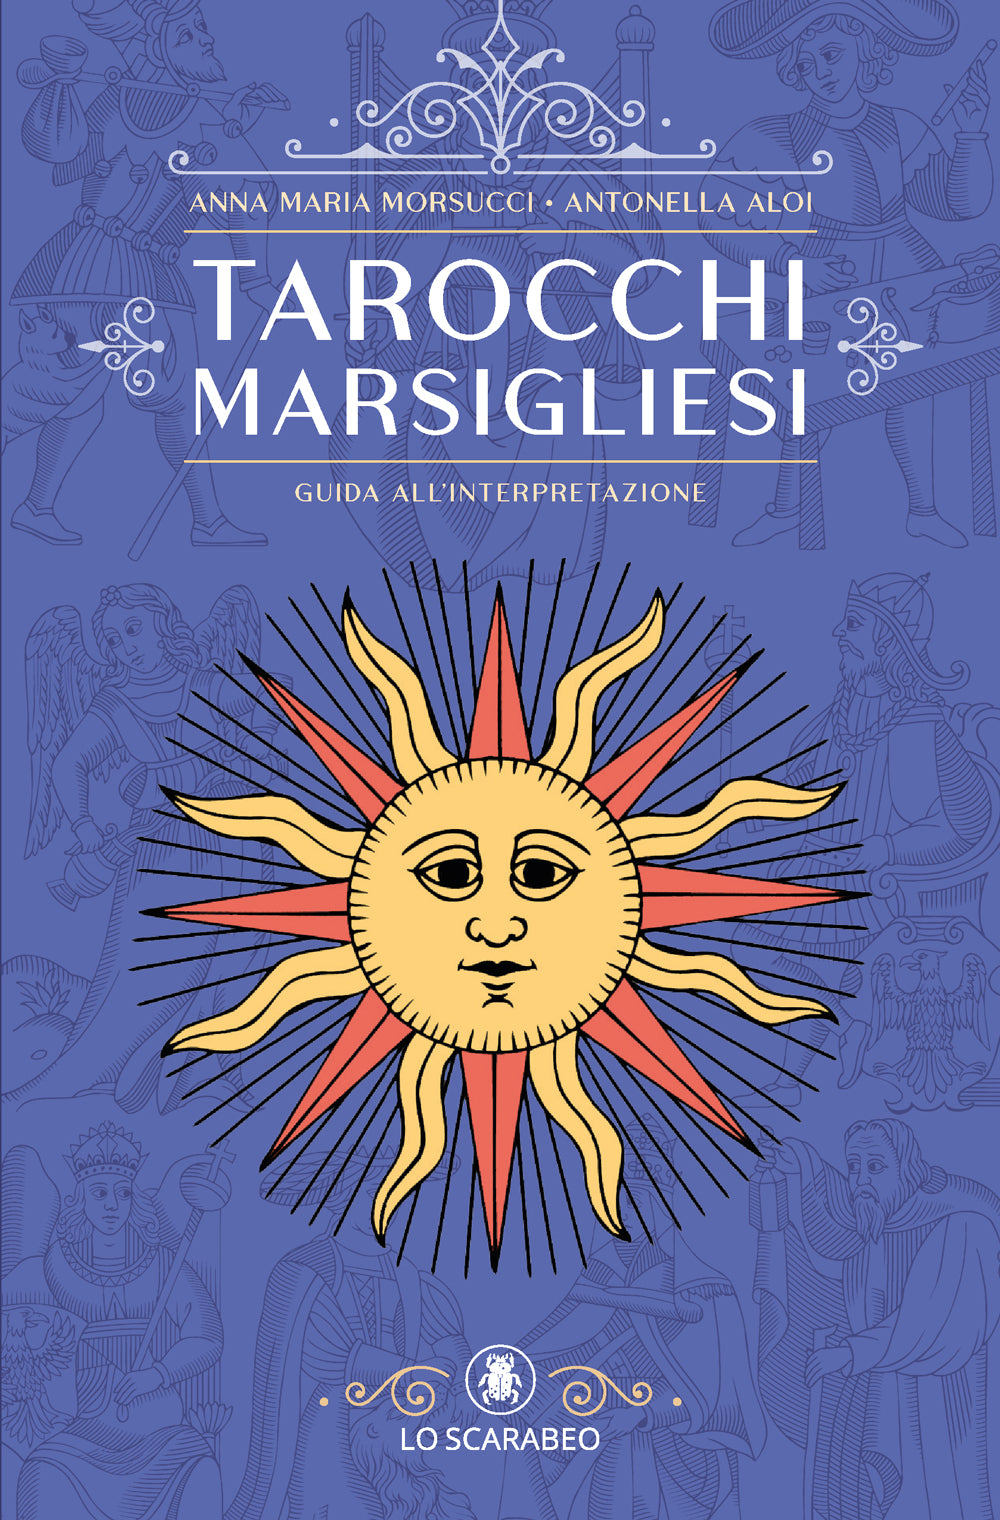 Livre manuel complet du tarot de Marseille - Luma Creation